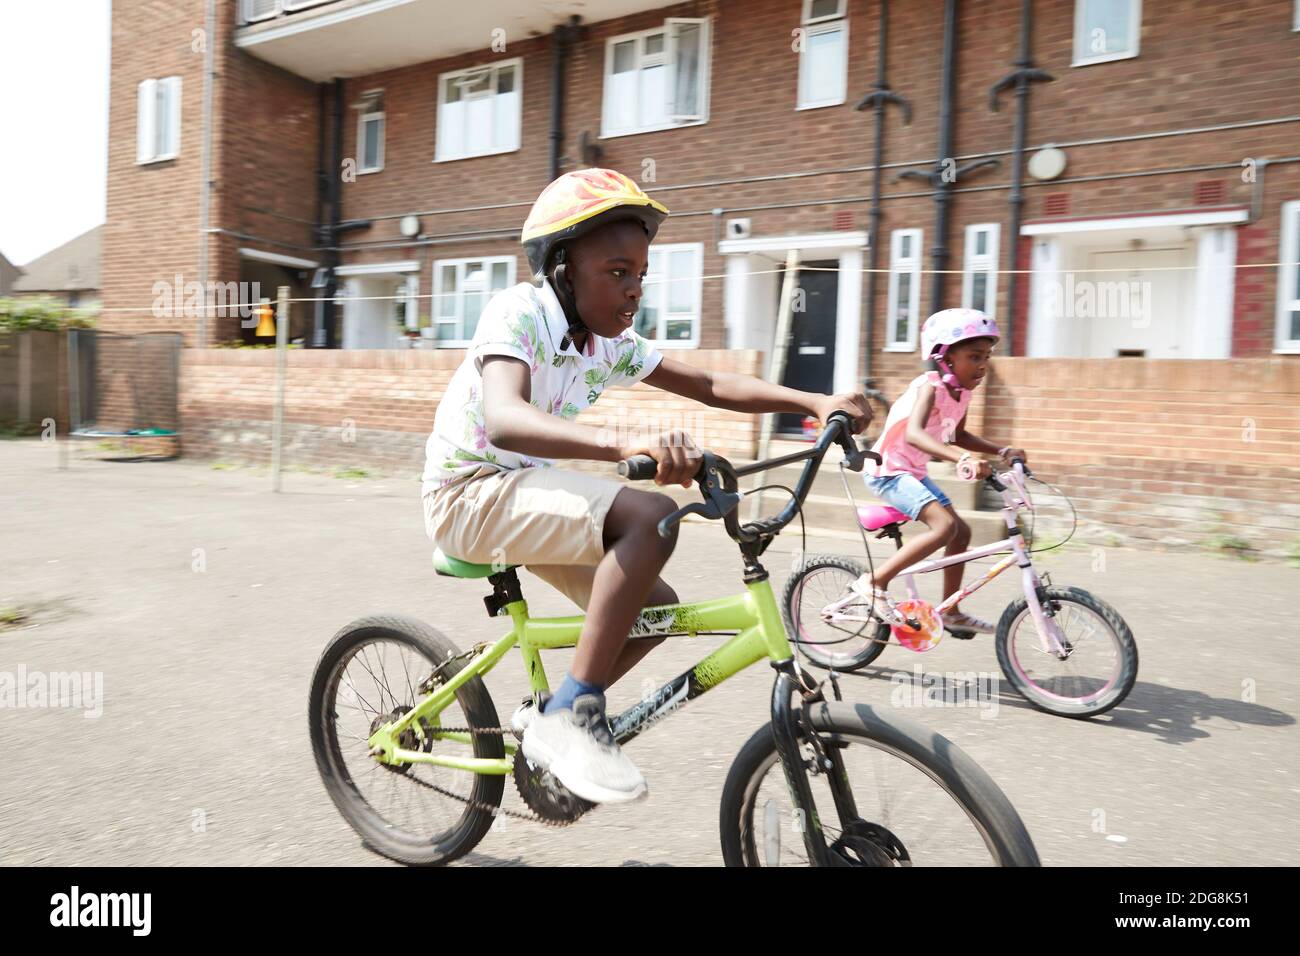 Frère et sœur à vélo dans un quartier ensoleillé Banque D'Images